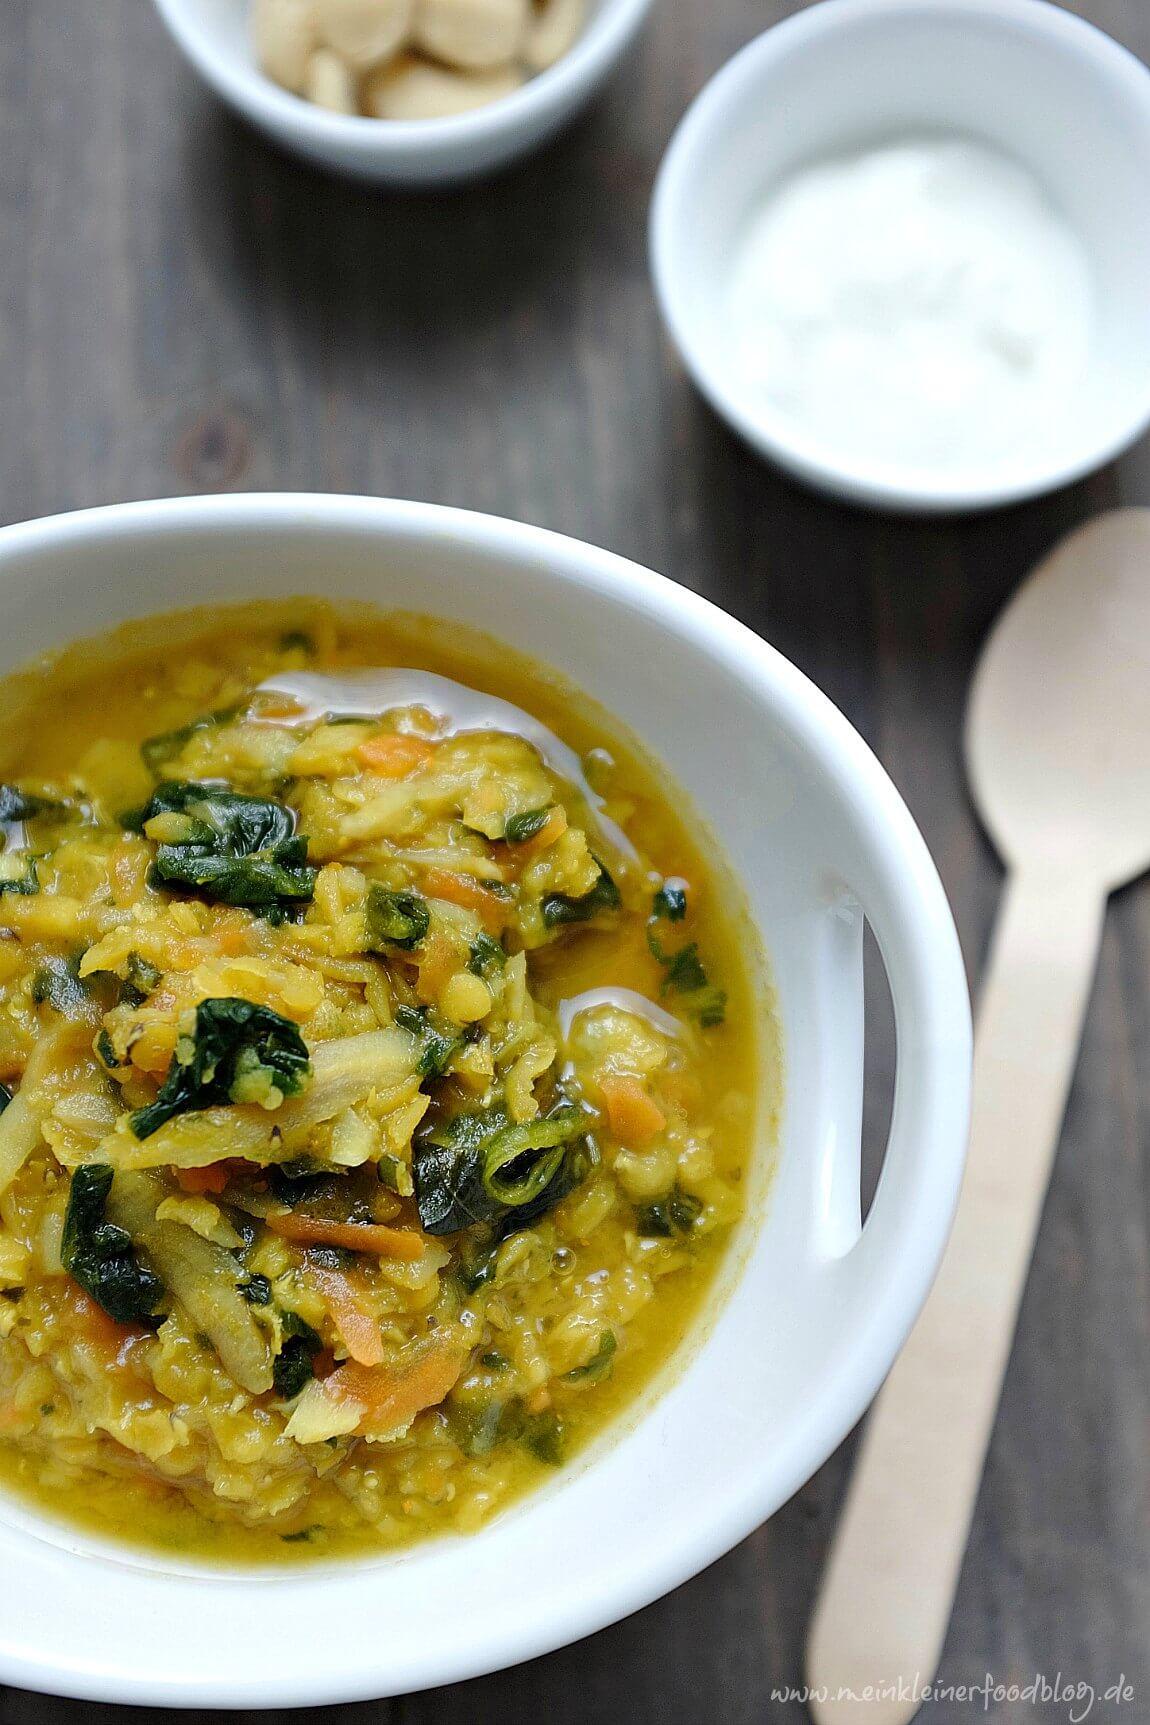 Diese indische Linsensuppe begleitet mich schon seit meiner Kindheit. Sie steckt voller guter Nährstoffe und schmeckt wunderbar nach Curry, Gemüse & Linsen.